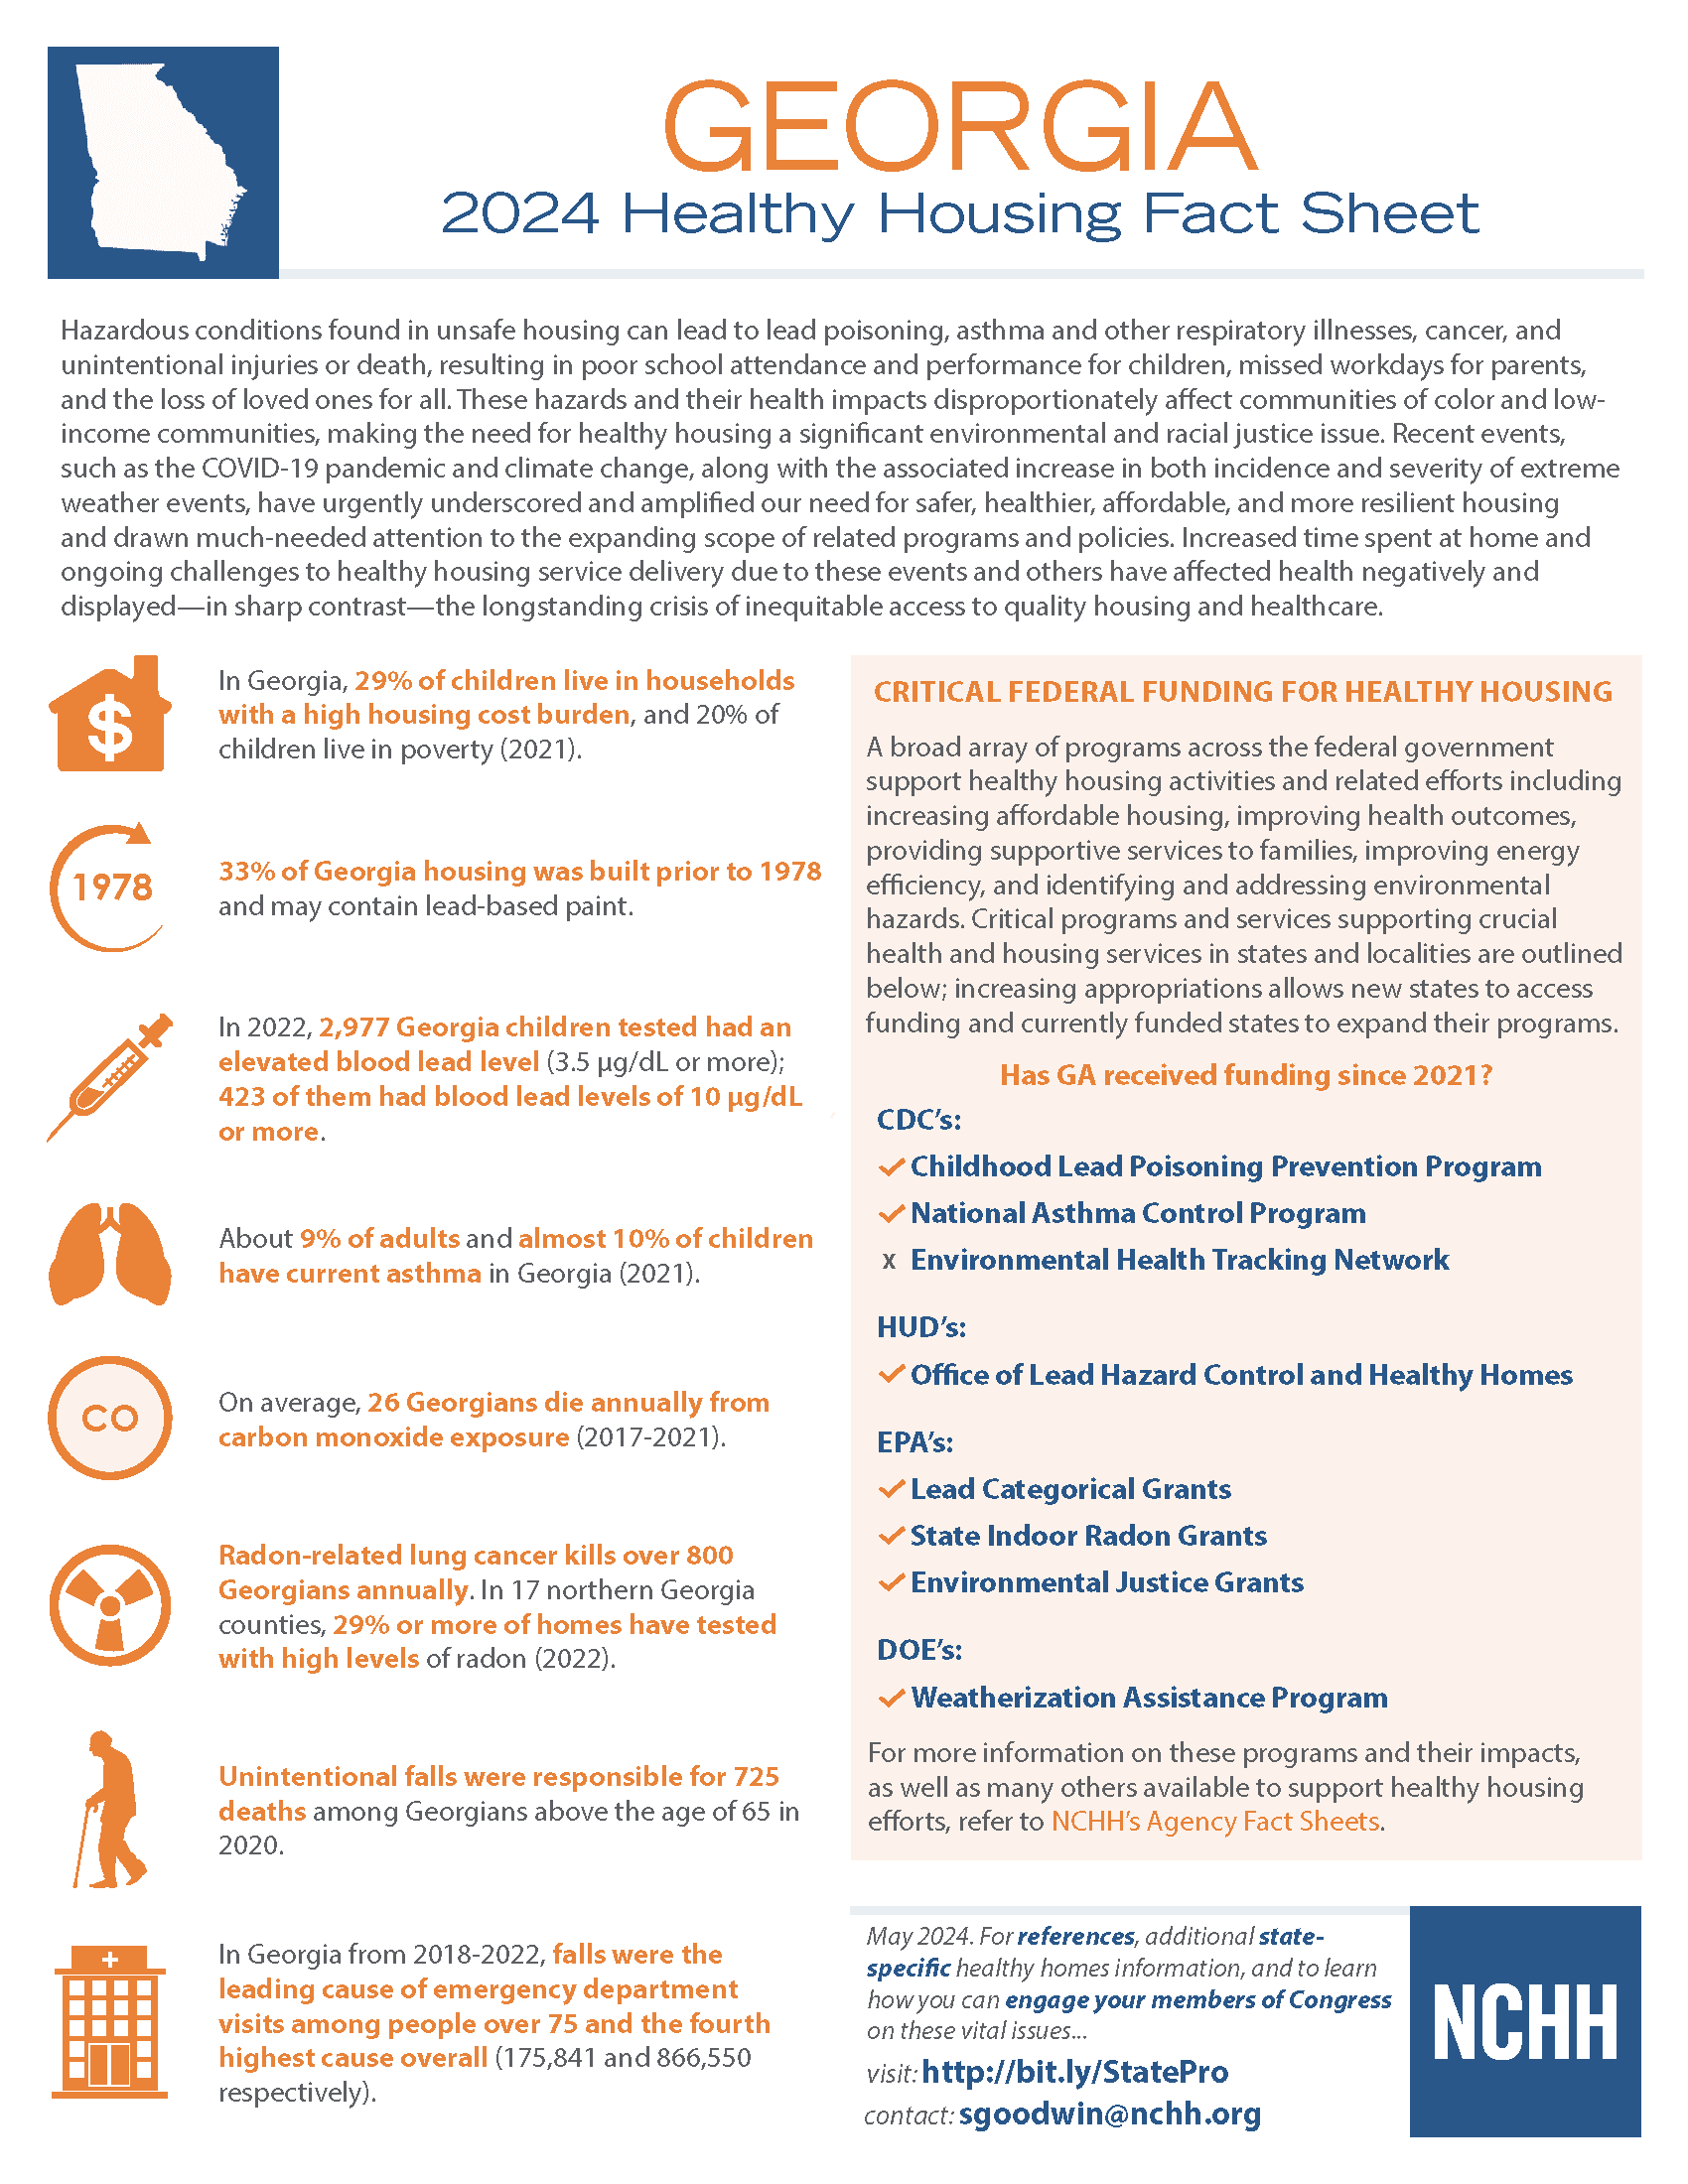 Healthy Housing Fact Sheet - Georgia 2023